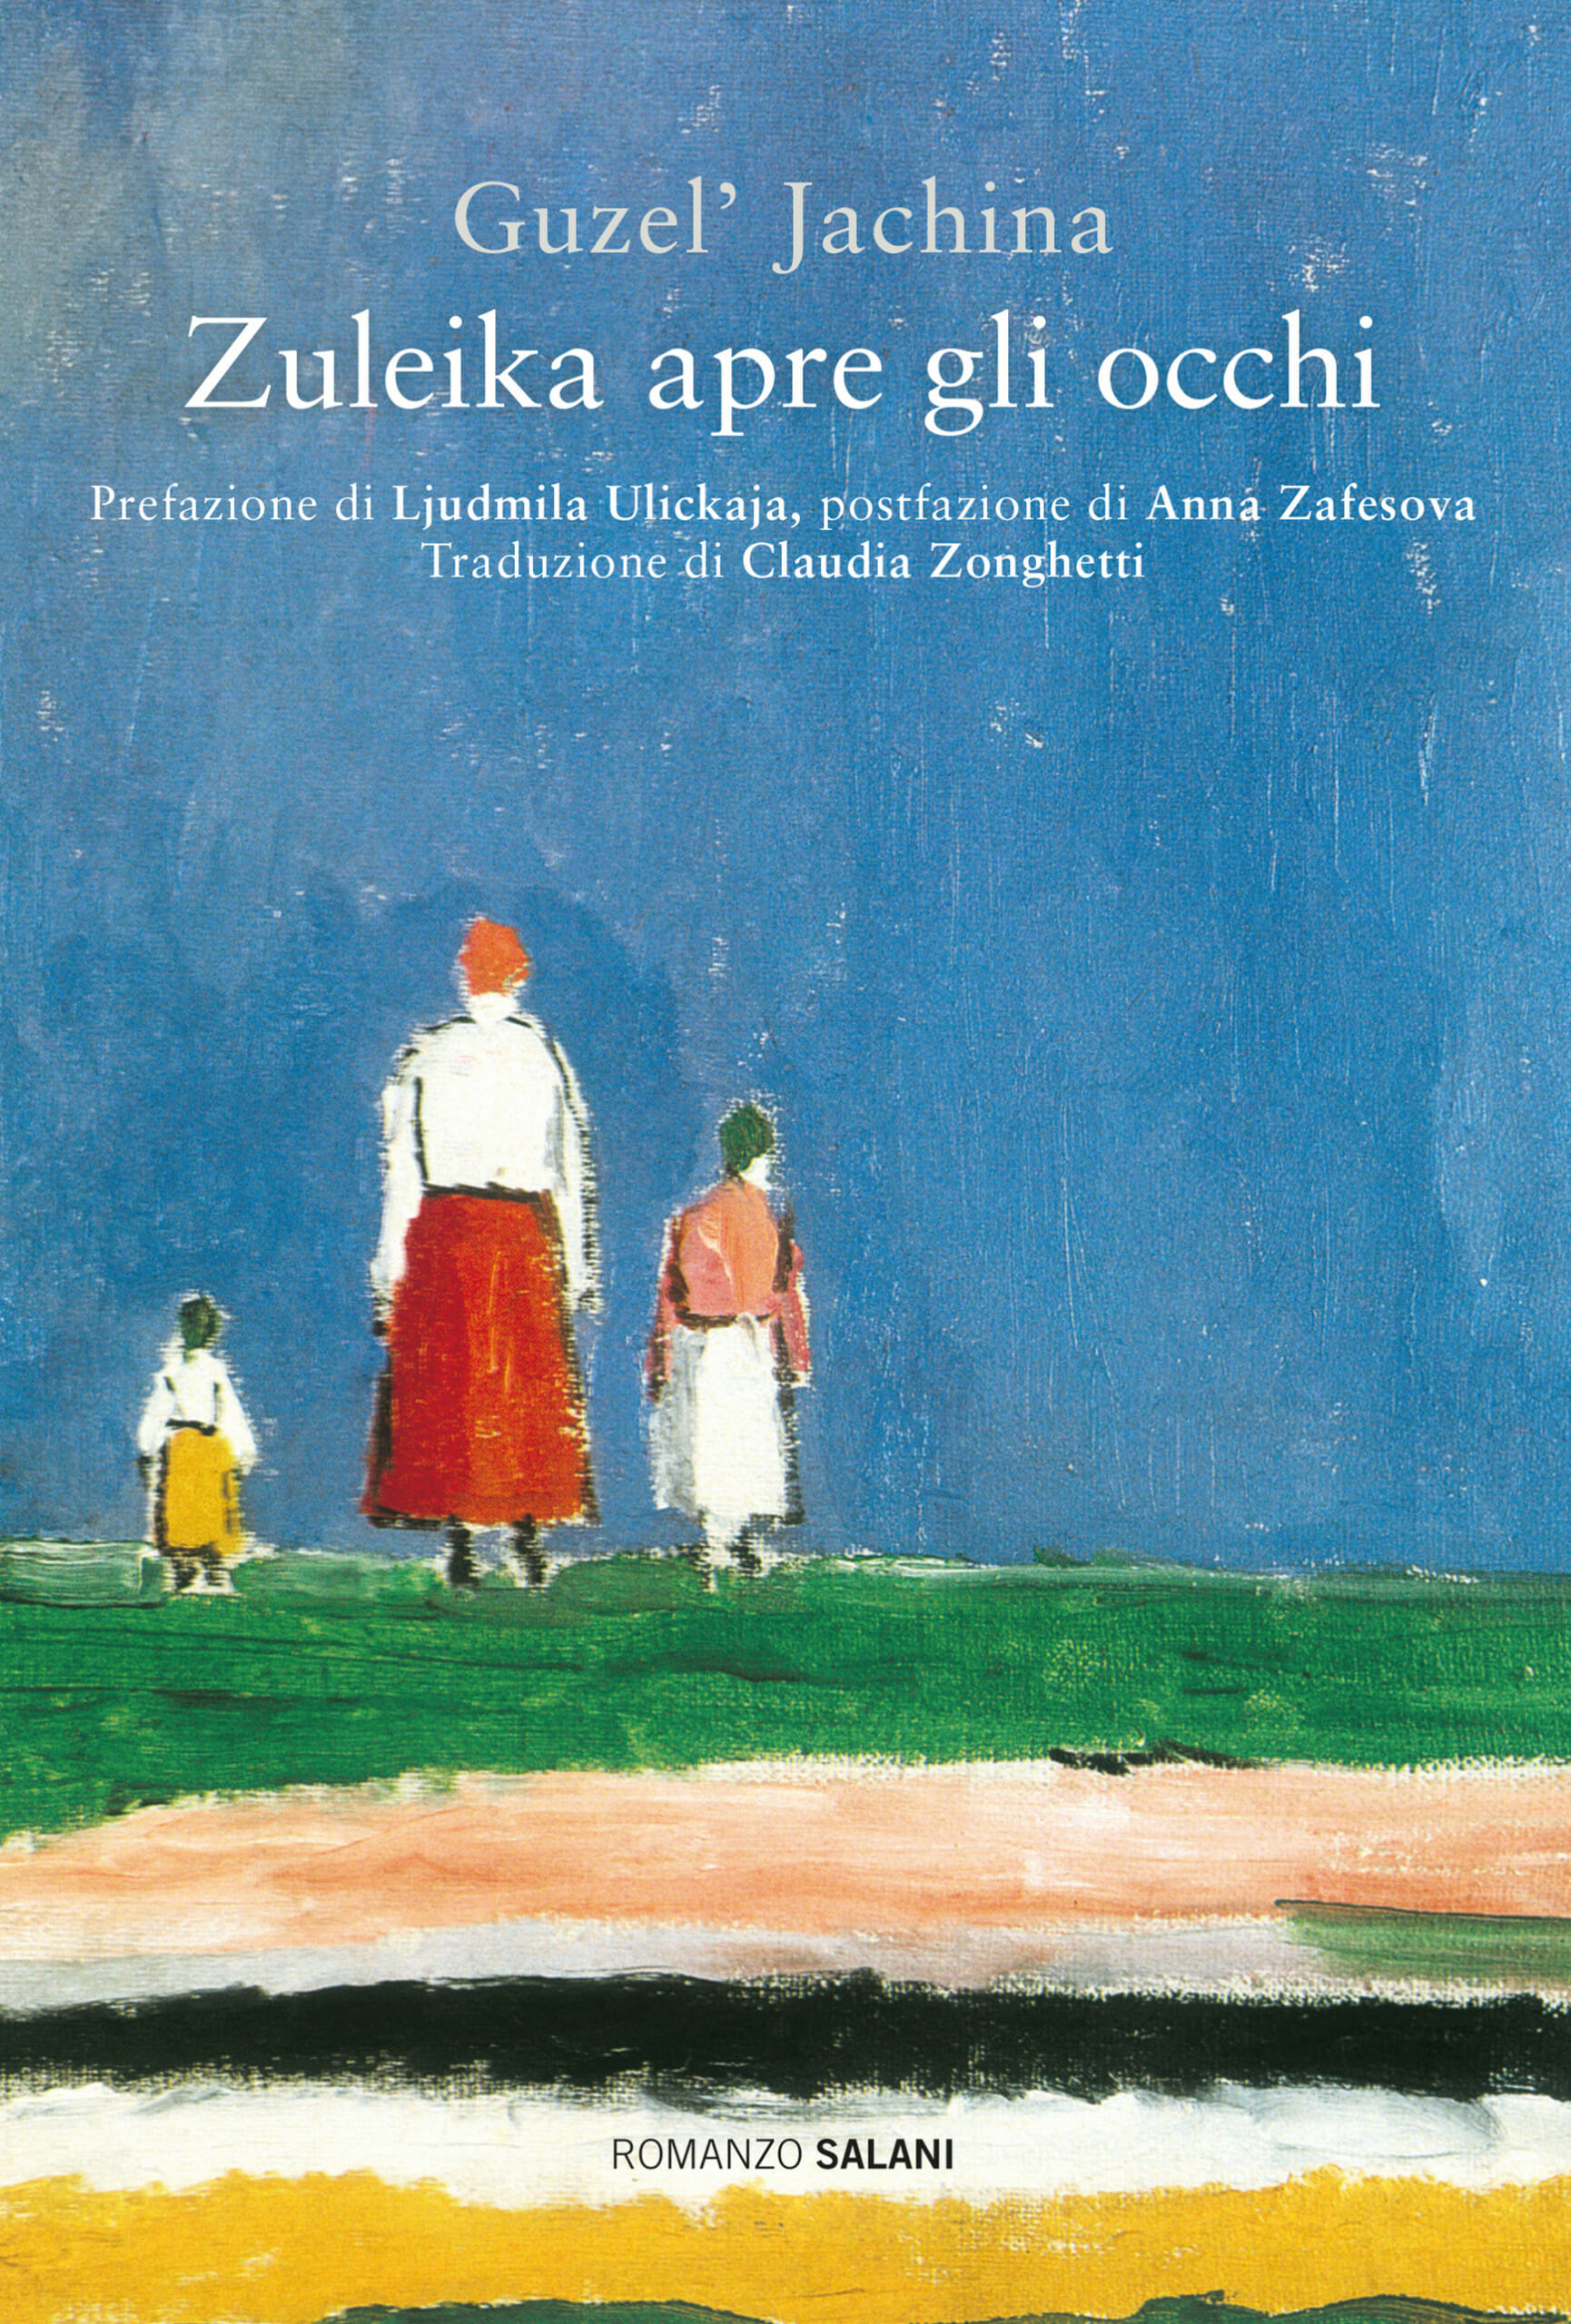 Guzel’ Jachina con il romanzo d’esordio Zuleika apre gli occhi